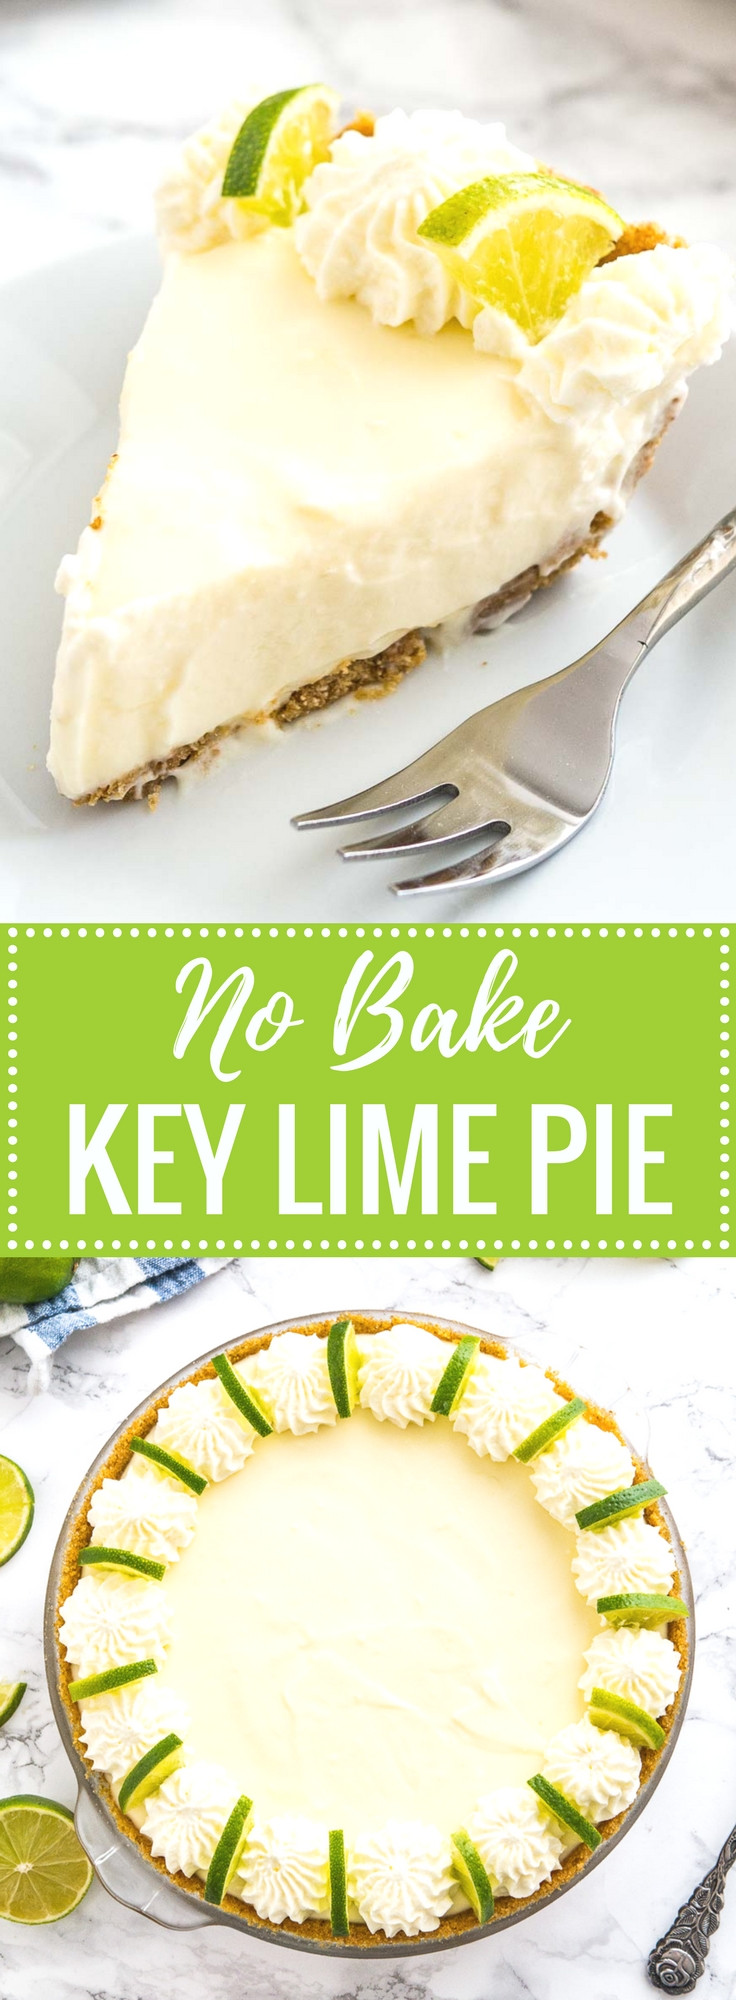 No Bake Key Lime Pie Recipe
 No Bake Key Lime Pie Key Lime Cream Pie